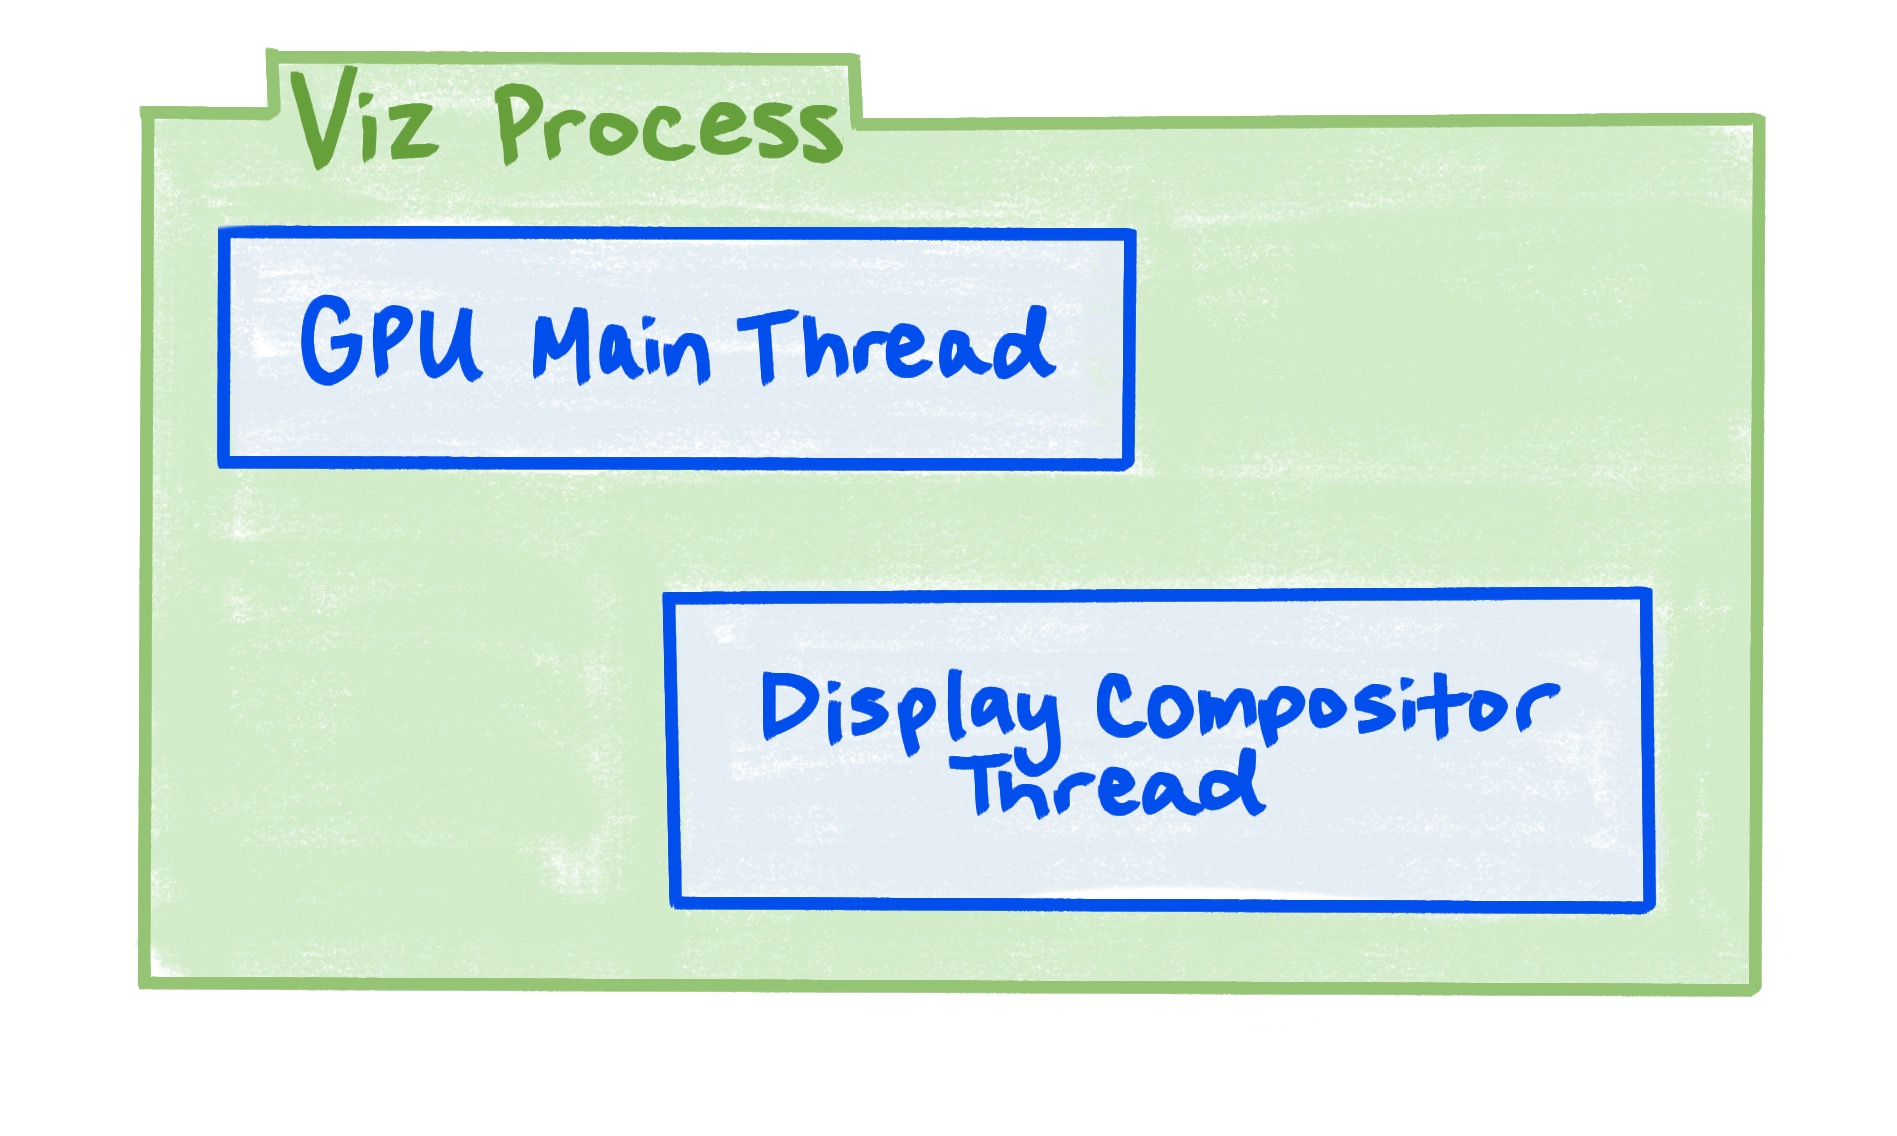 Een diagram dat laat zien dat het Viz-proces de GPU-hoofdthread en de displaycompositor-thread omvat.